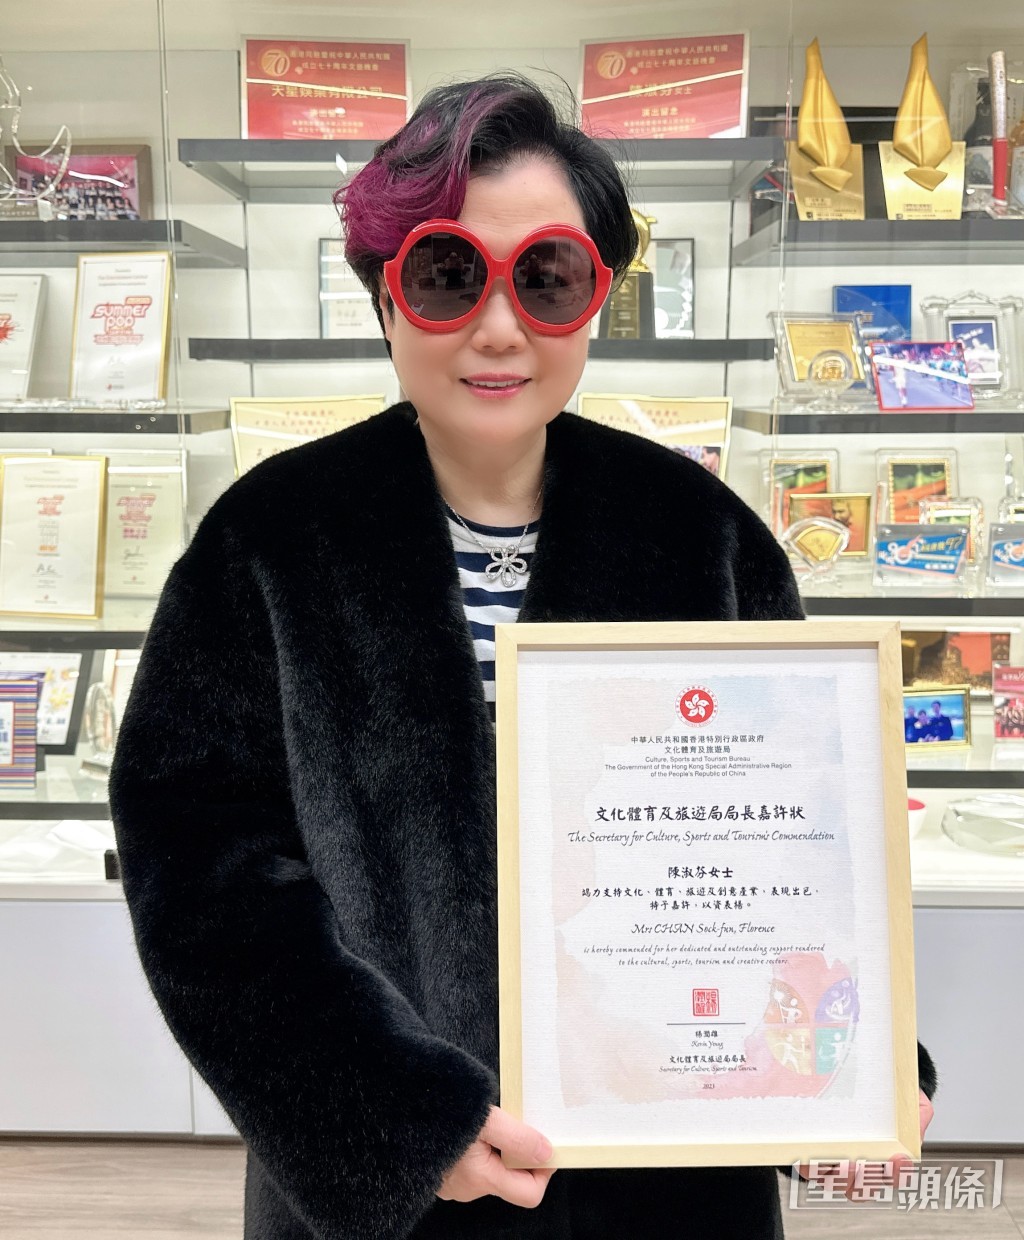 陳太榮獲楊潤雄局長頒發嘉許狀，以表揚她推動文化藝術及創意產業發展的出色表現。